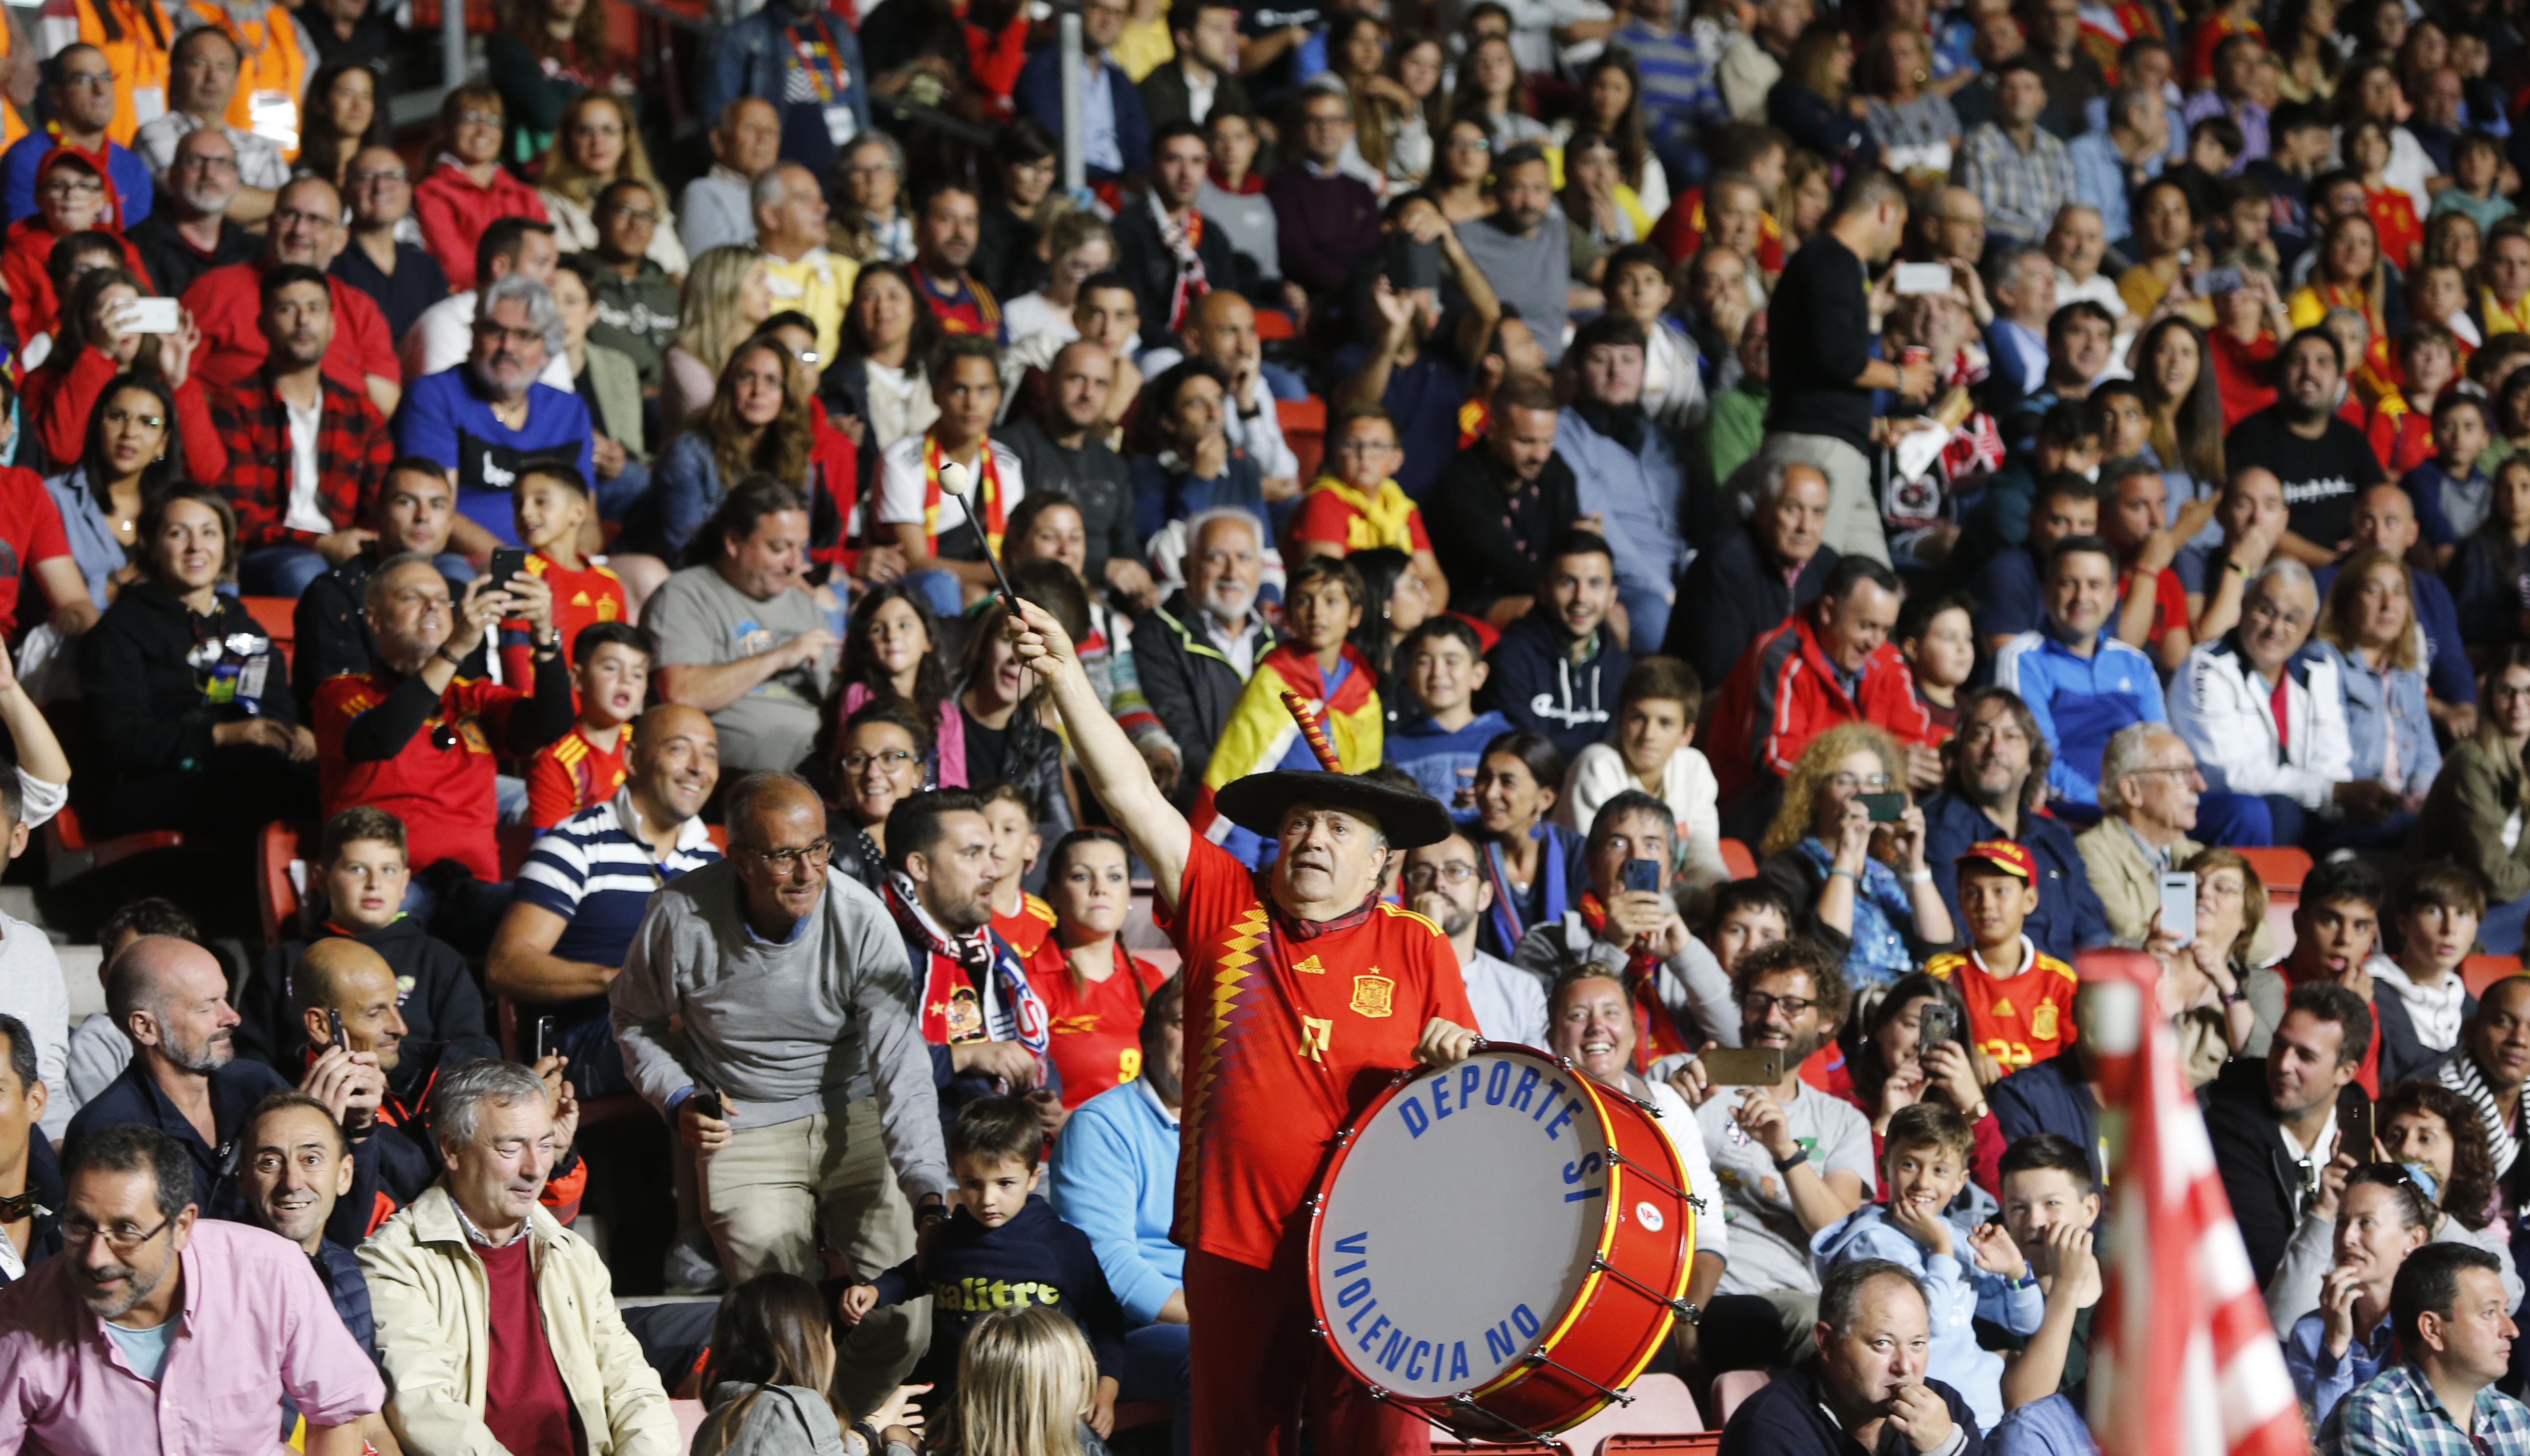 Parte del público observa a la Selección Española de Fútbol contra las Islas Feroe en el estadio de El Molinón (Gijón). Fuente: Europa Press.